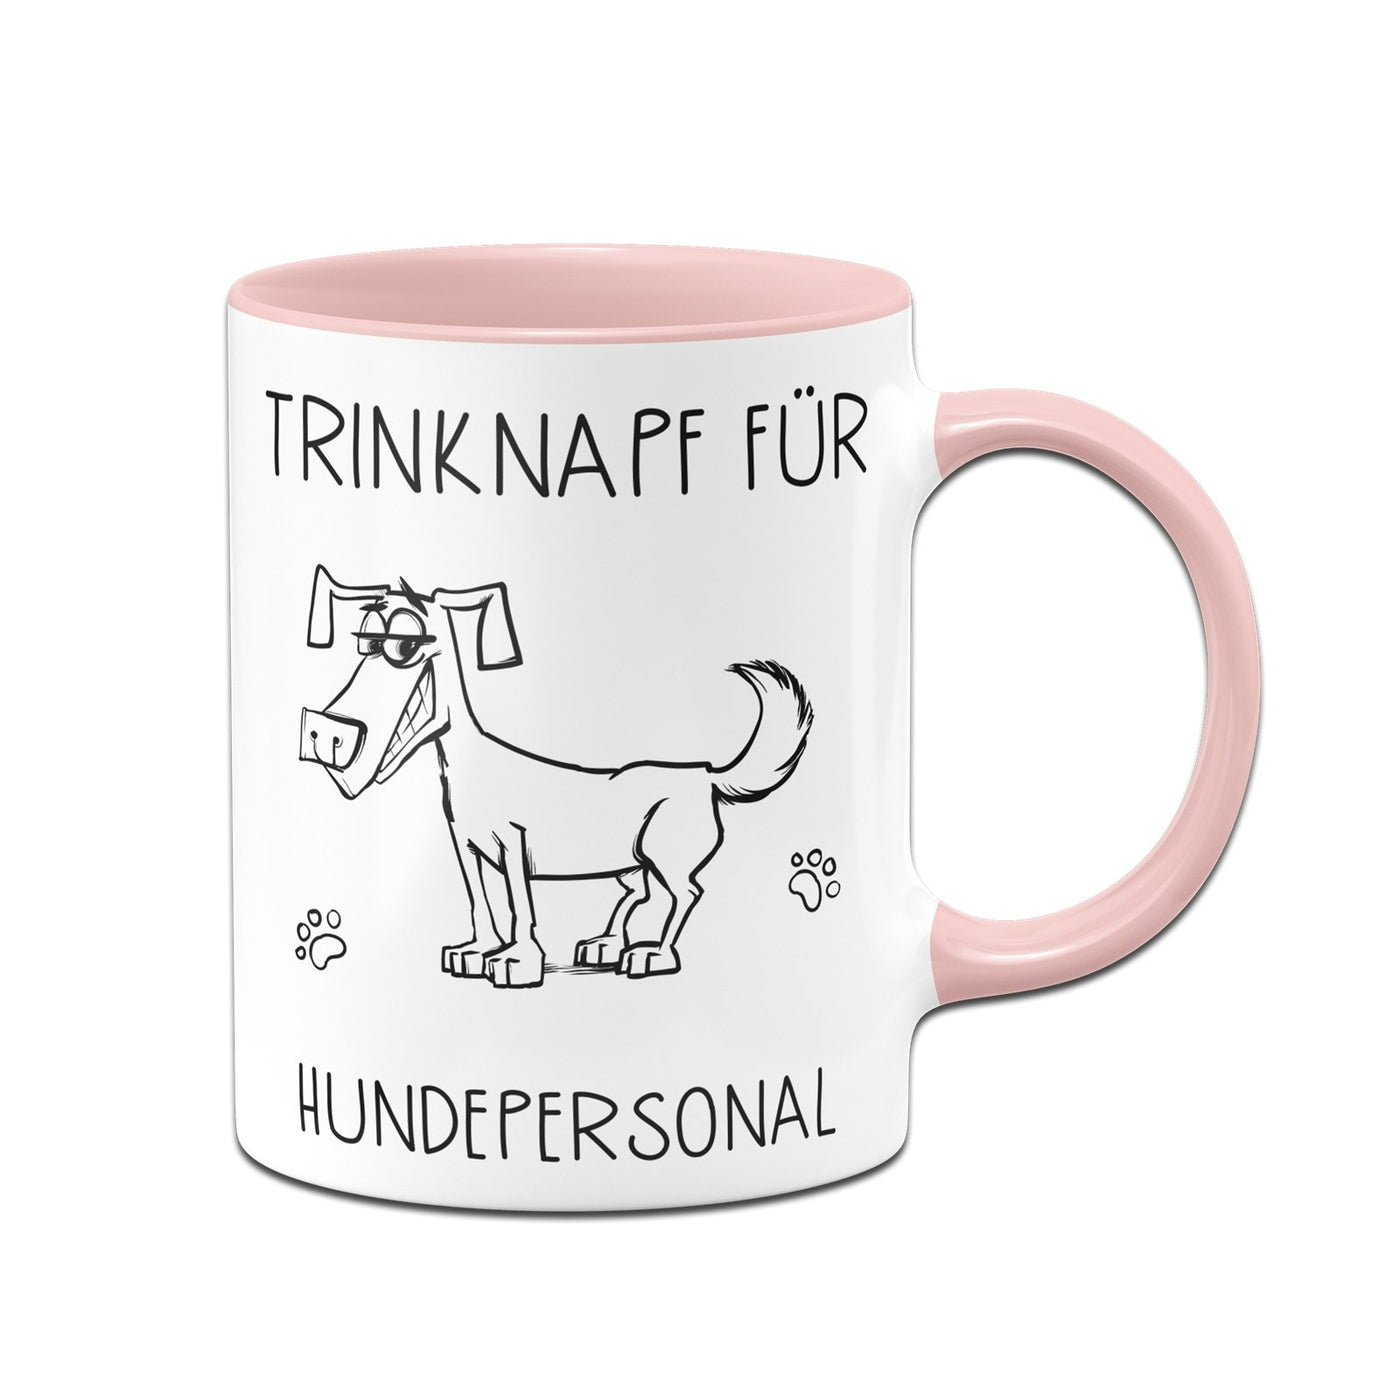 Bild: Tasse - Trinknapf für Hundepersonal V2 Geschenkidee